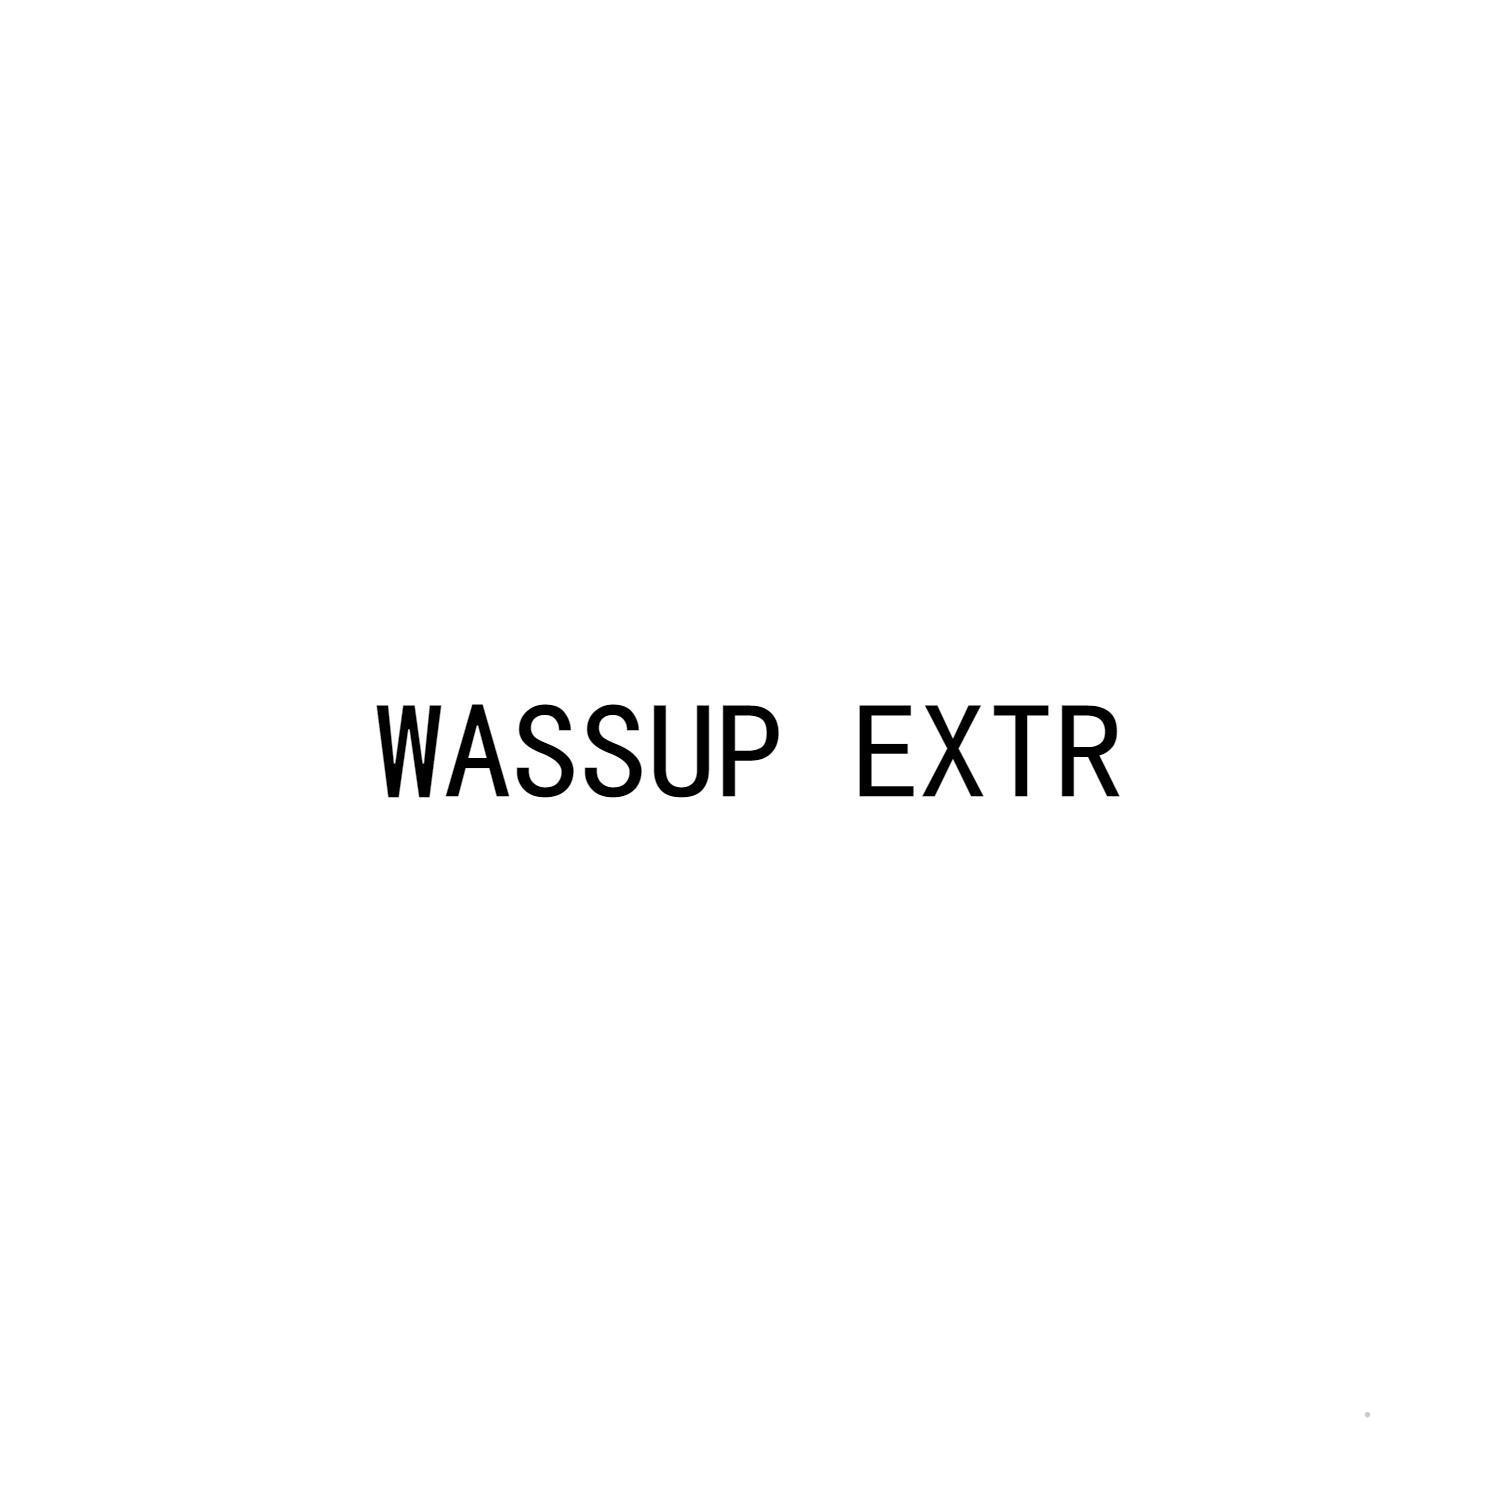 WASSUP EXTRlogo